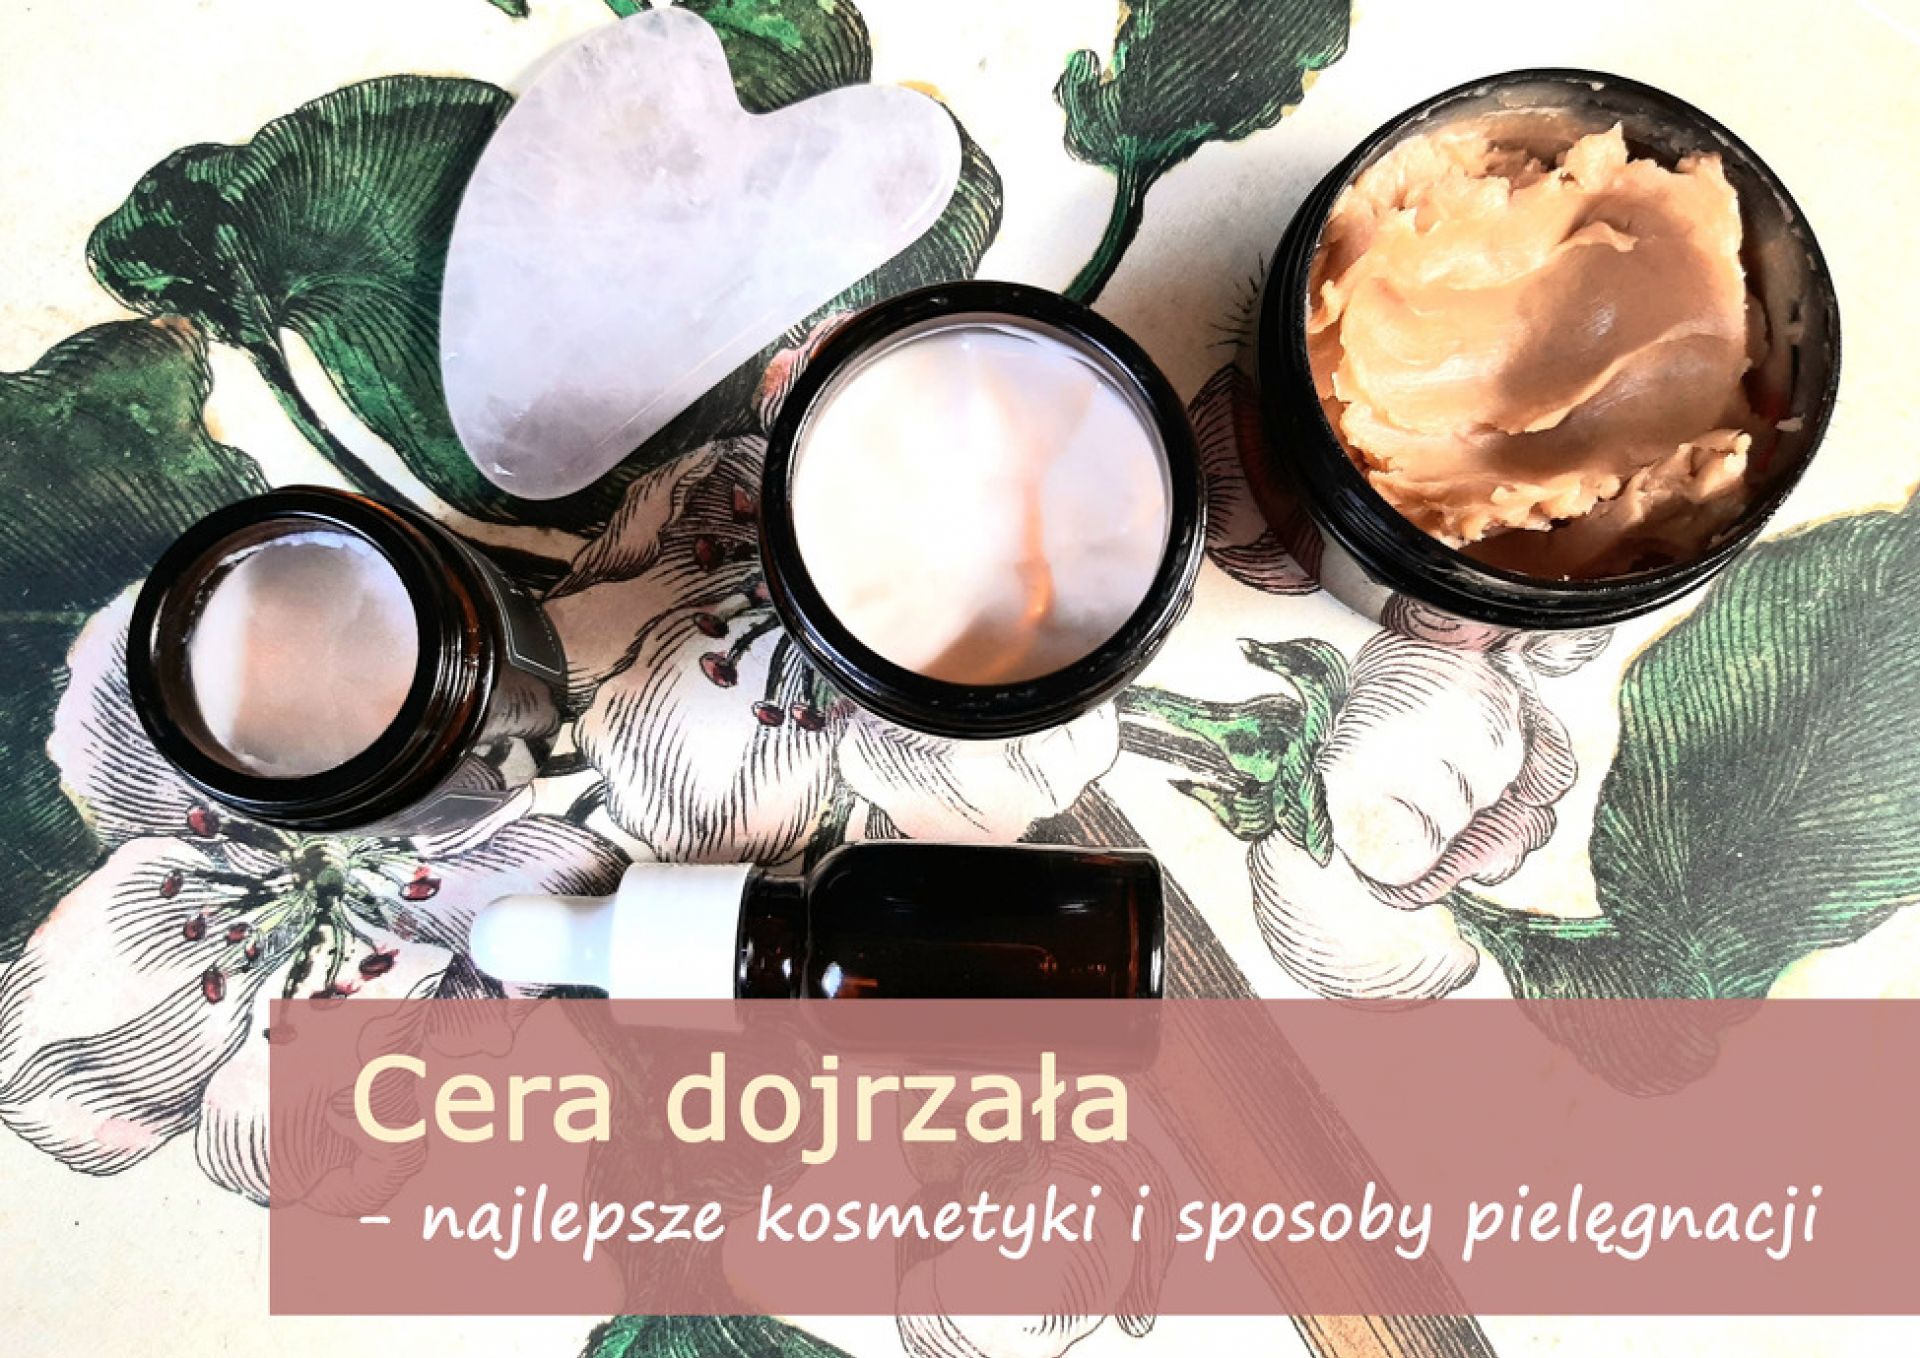 Cera dojrzała - najlepsze kosmetyki i sposoby pielęgnacji - cera_dojrzala_(1).jpg